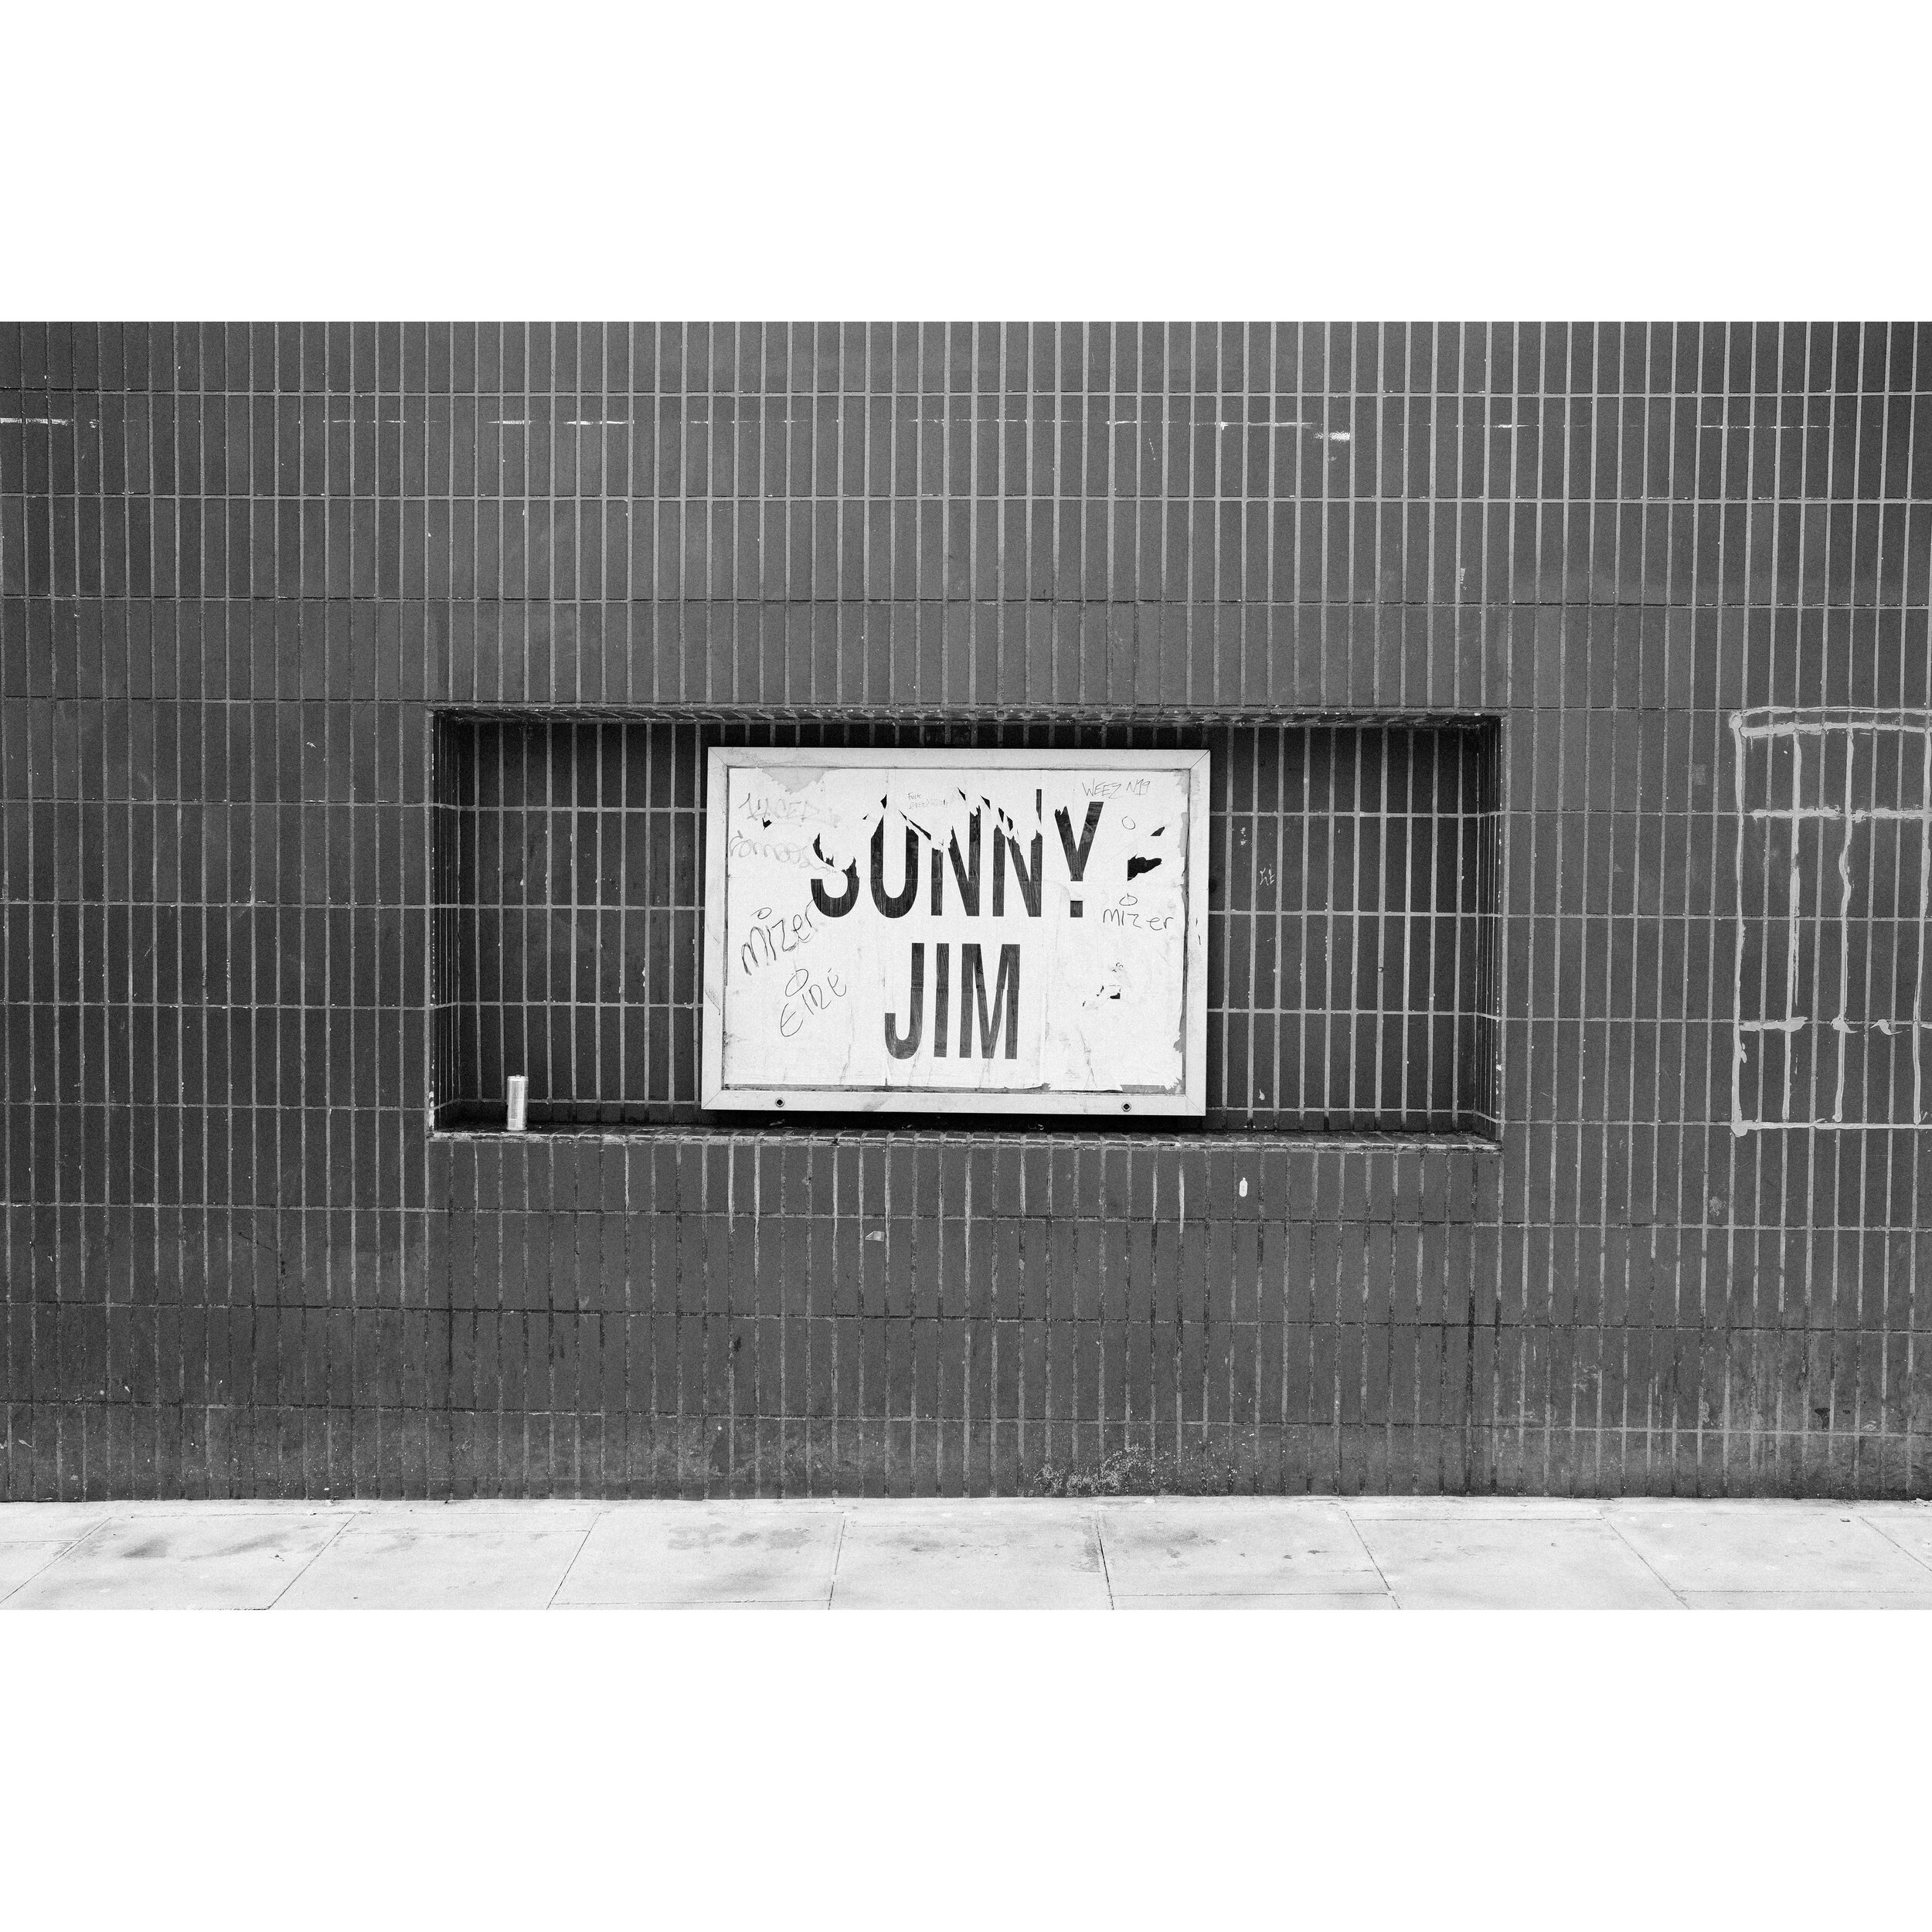 SUNNY JIM
&bull;
&bull;
&bull;
#sunnyjim #archway #archwaylondon #archwayn19 #london #banalmag #minimal #minimalint #unlimitedminimal #urbanexploring #urbanspace #blackandwhite #monochrome #fujifilm #x100 #x100vi #filmsimulation #kodaktrix400 #advent